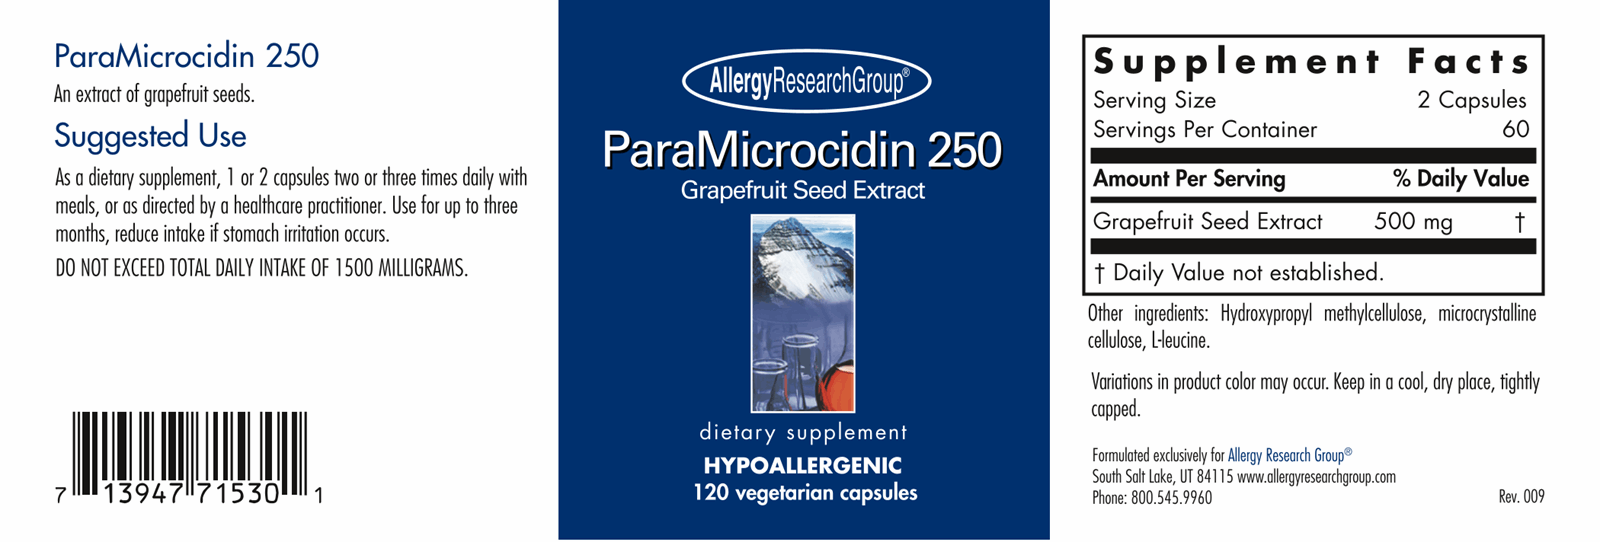 ParaMicrocidin 250 